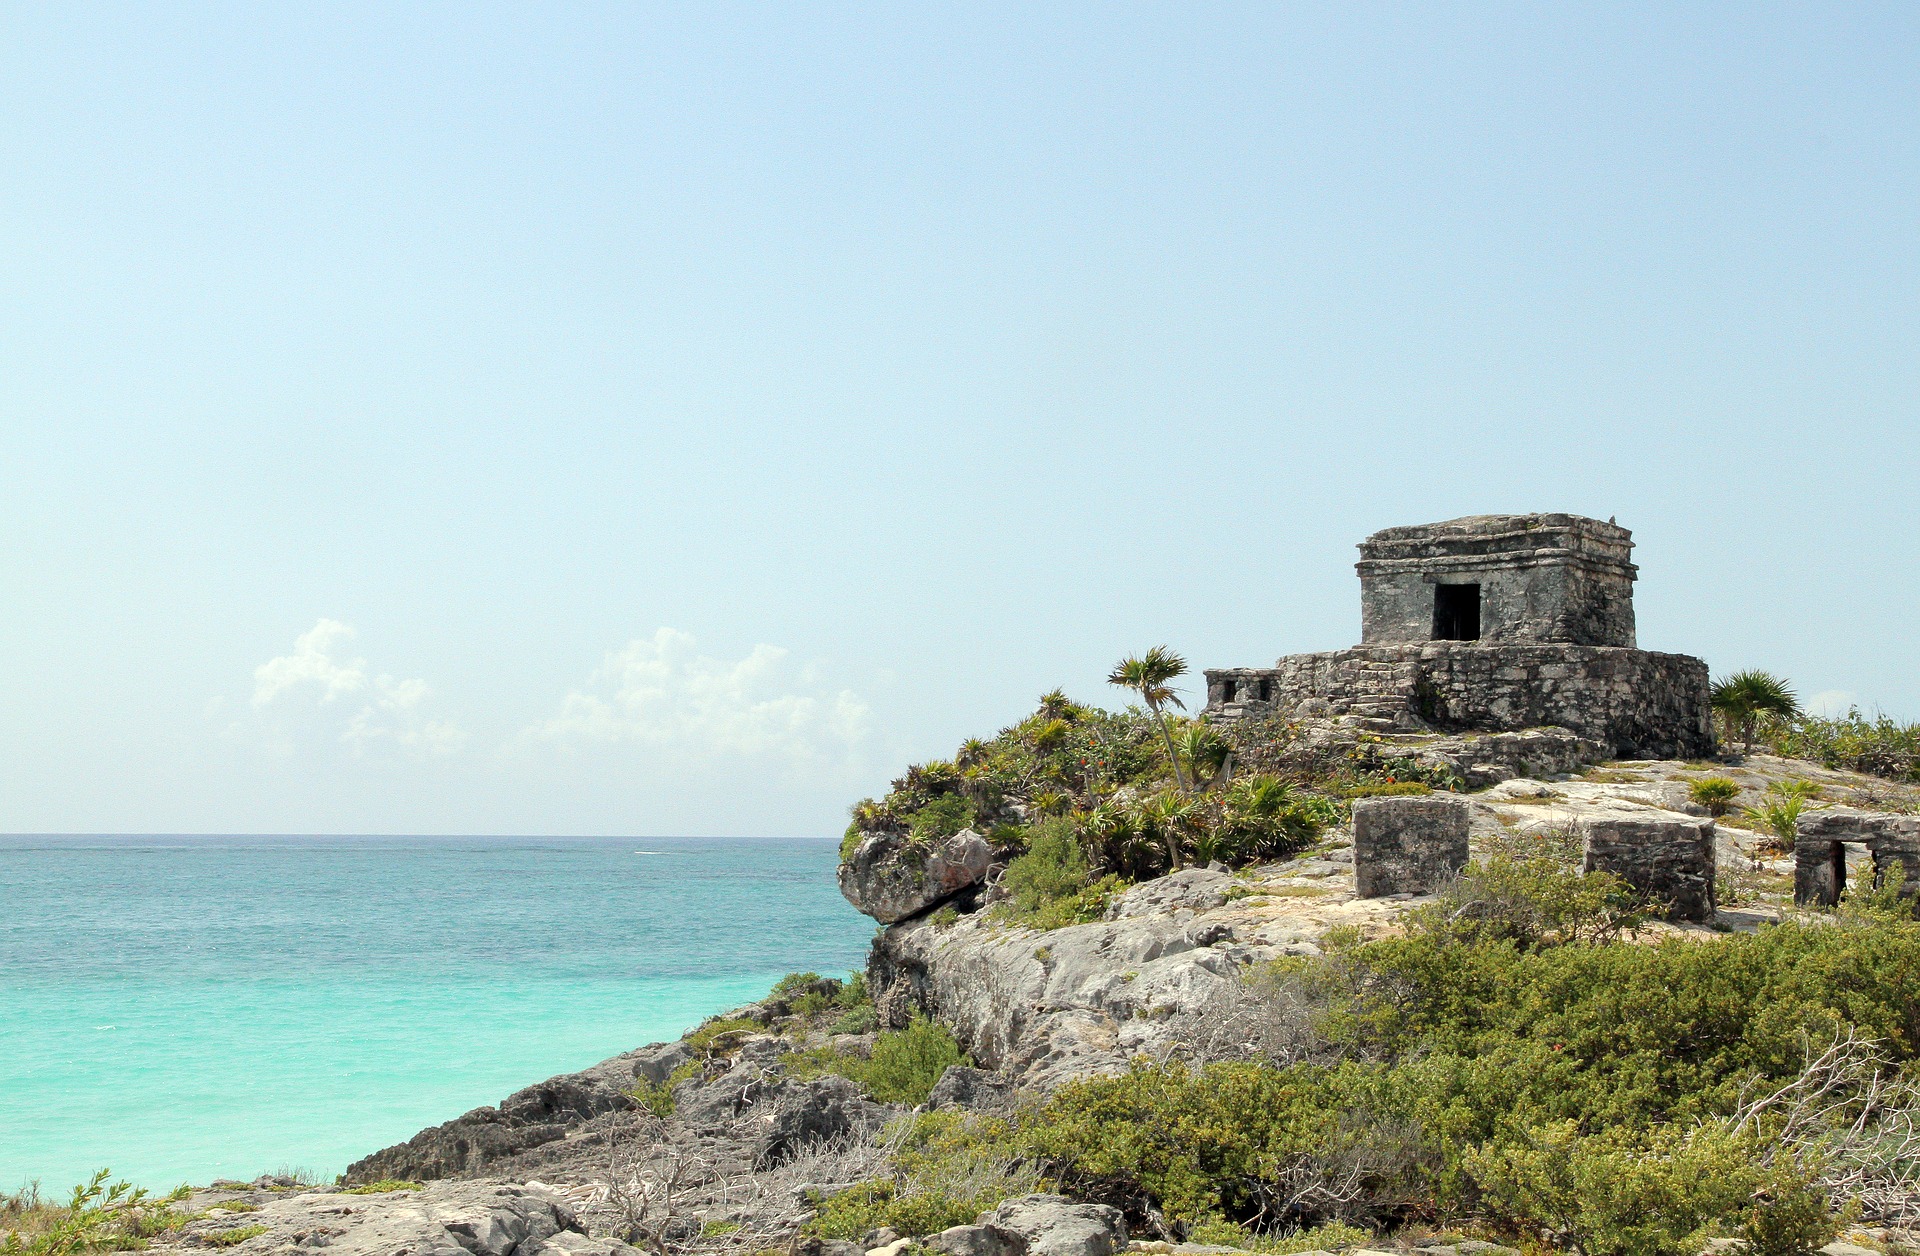 Sitios Arqueológicos desde Cancún